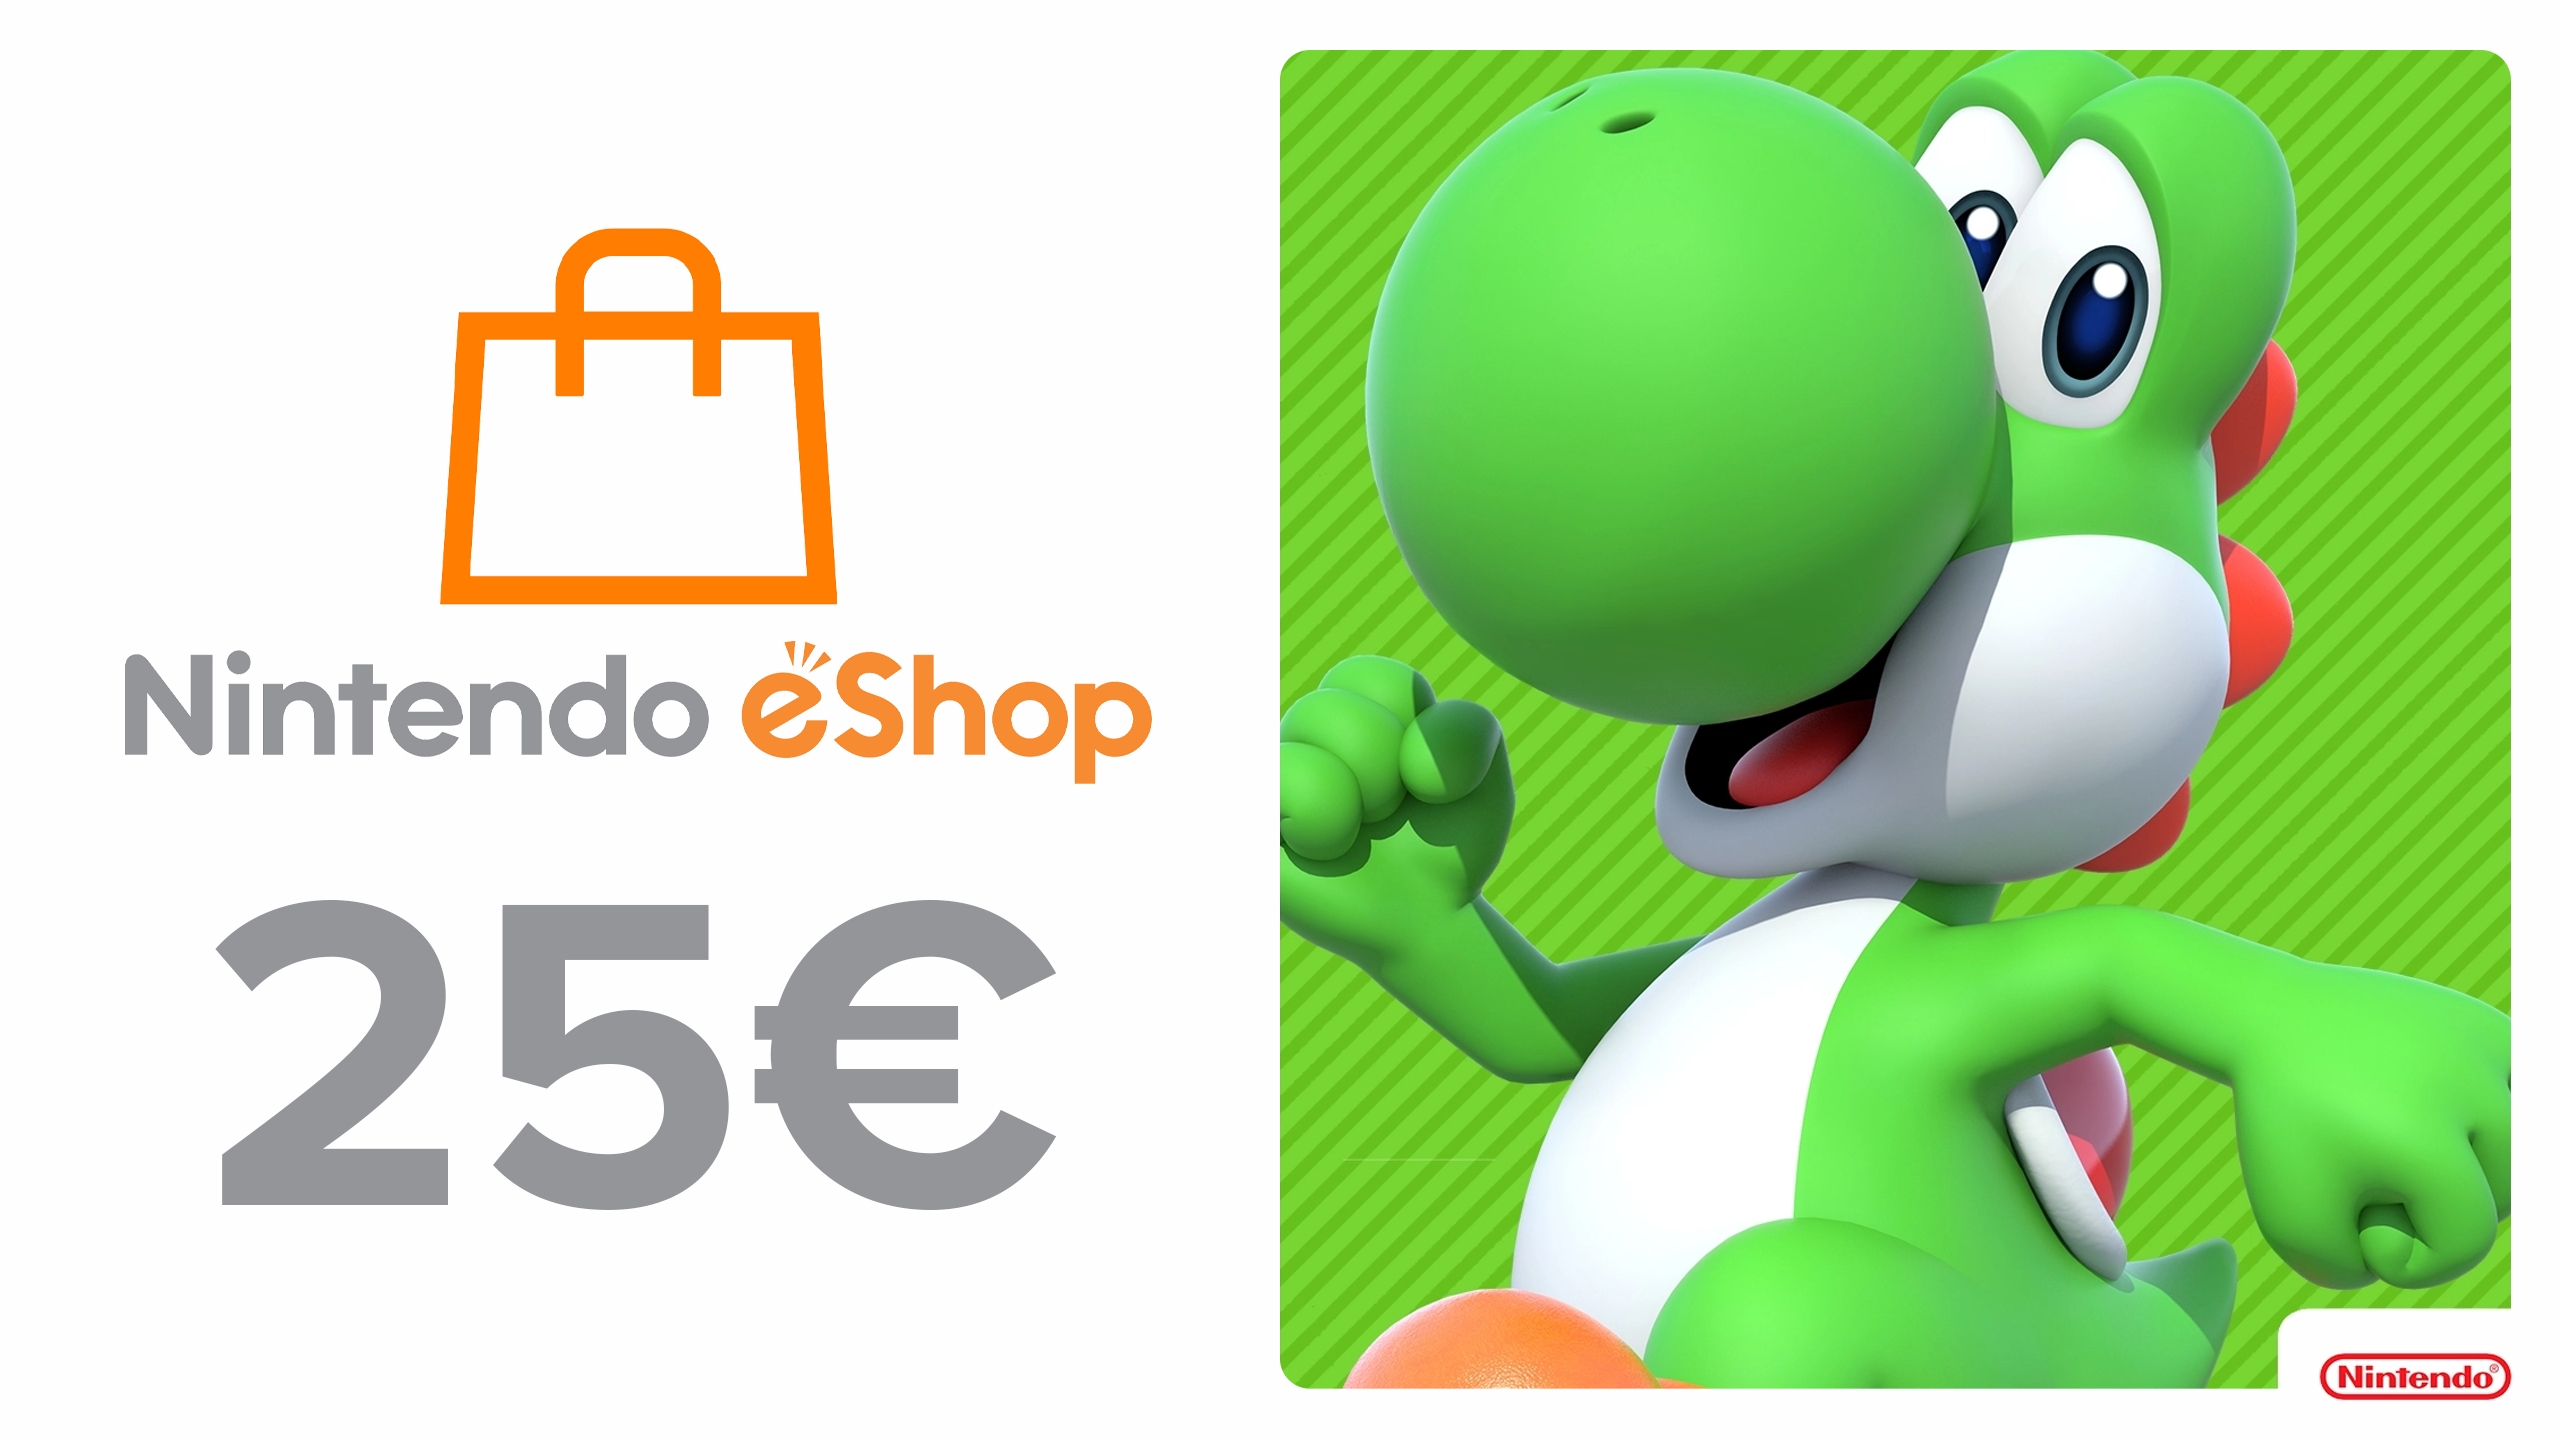 Nintendo eShop Eshop Card Nintendo 25€ Buy